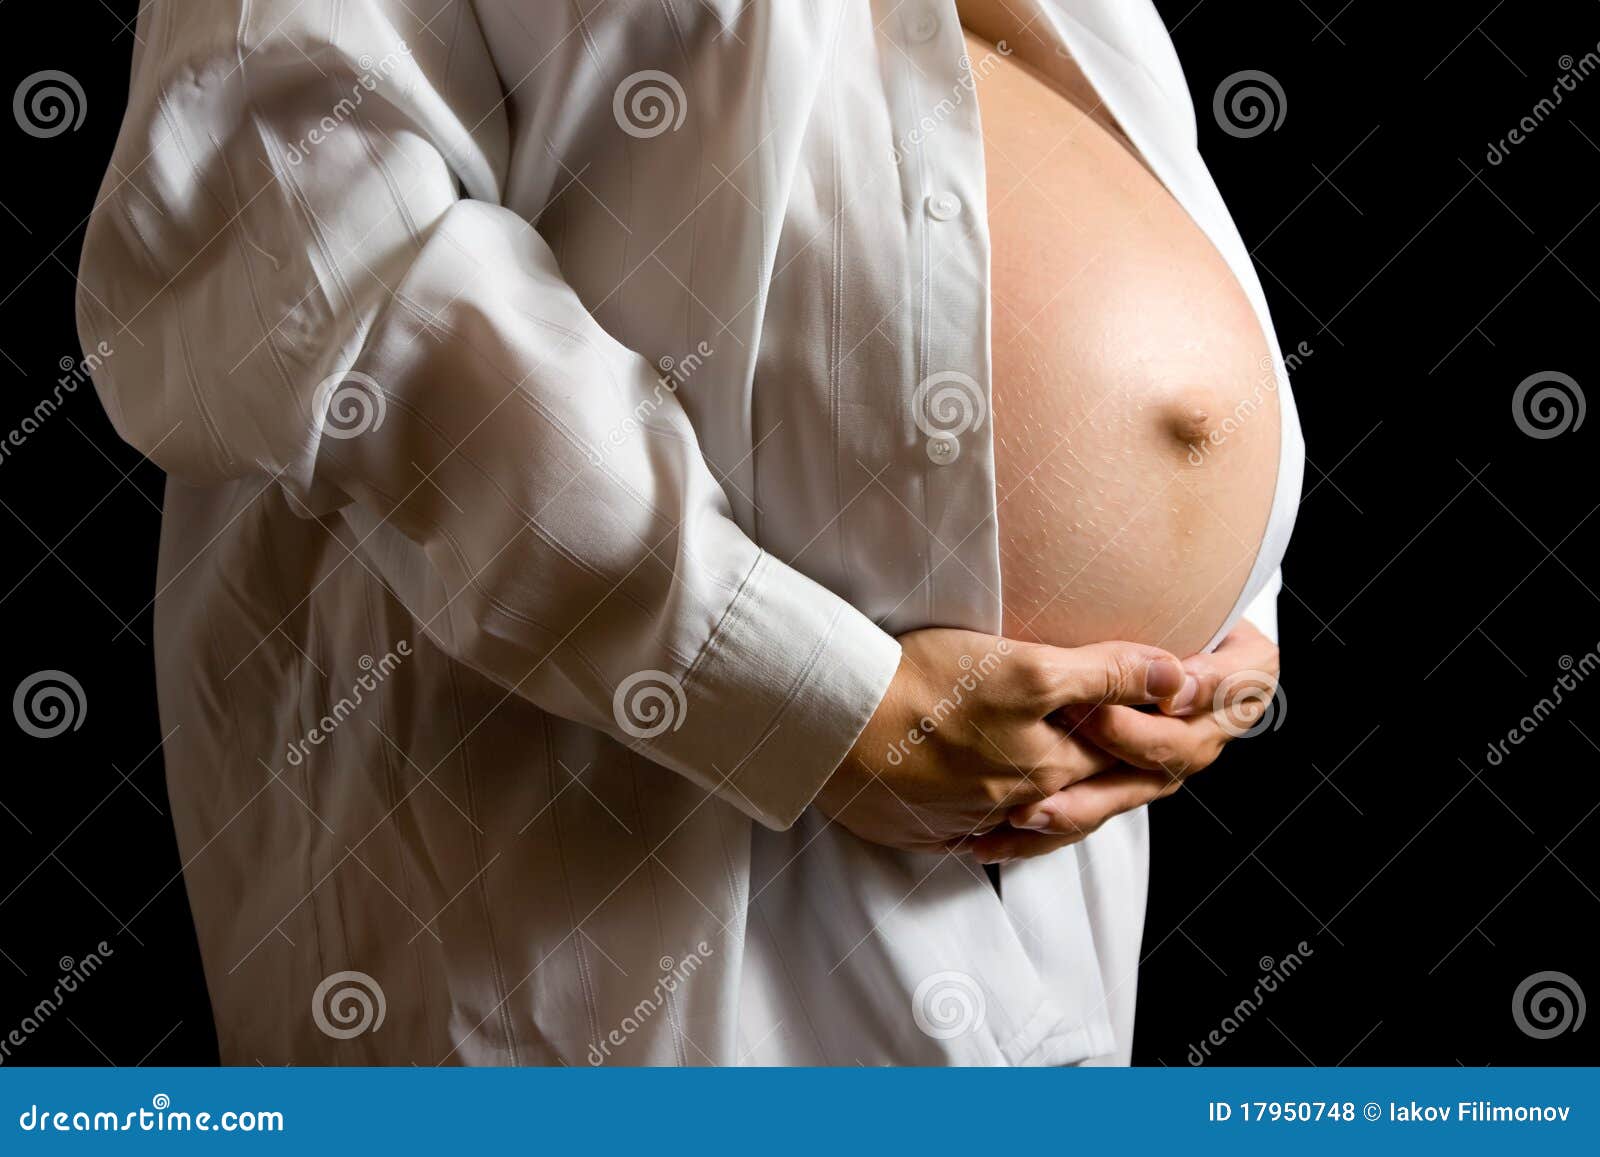 беременна а грудь обычная фото 119